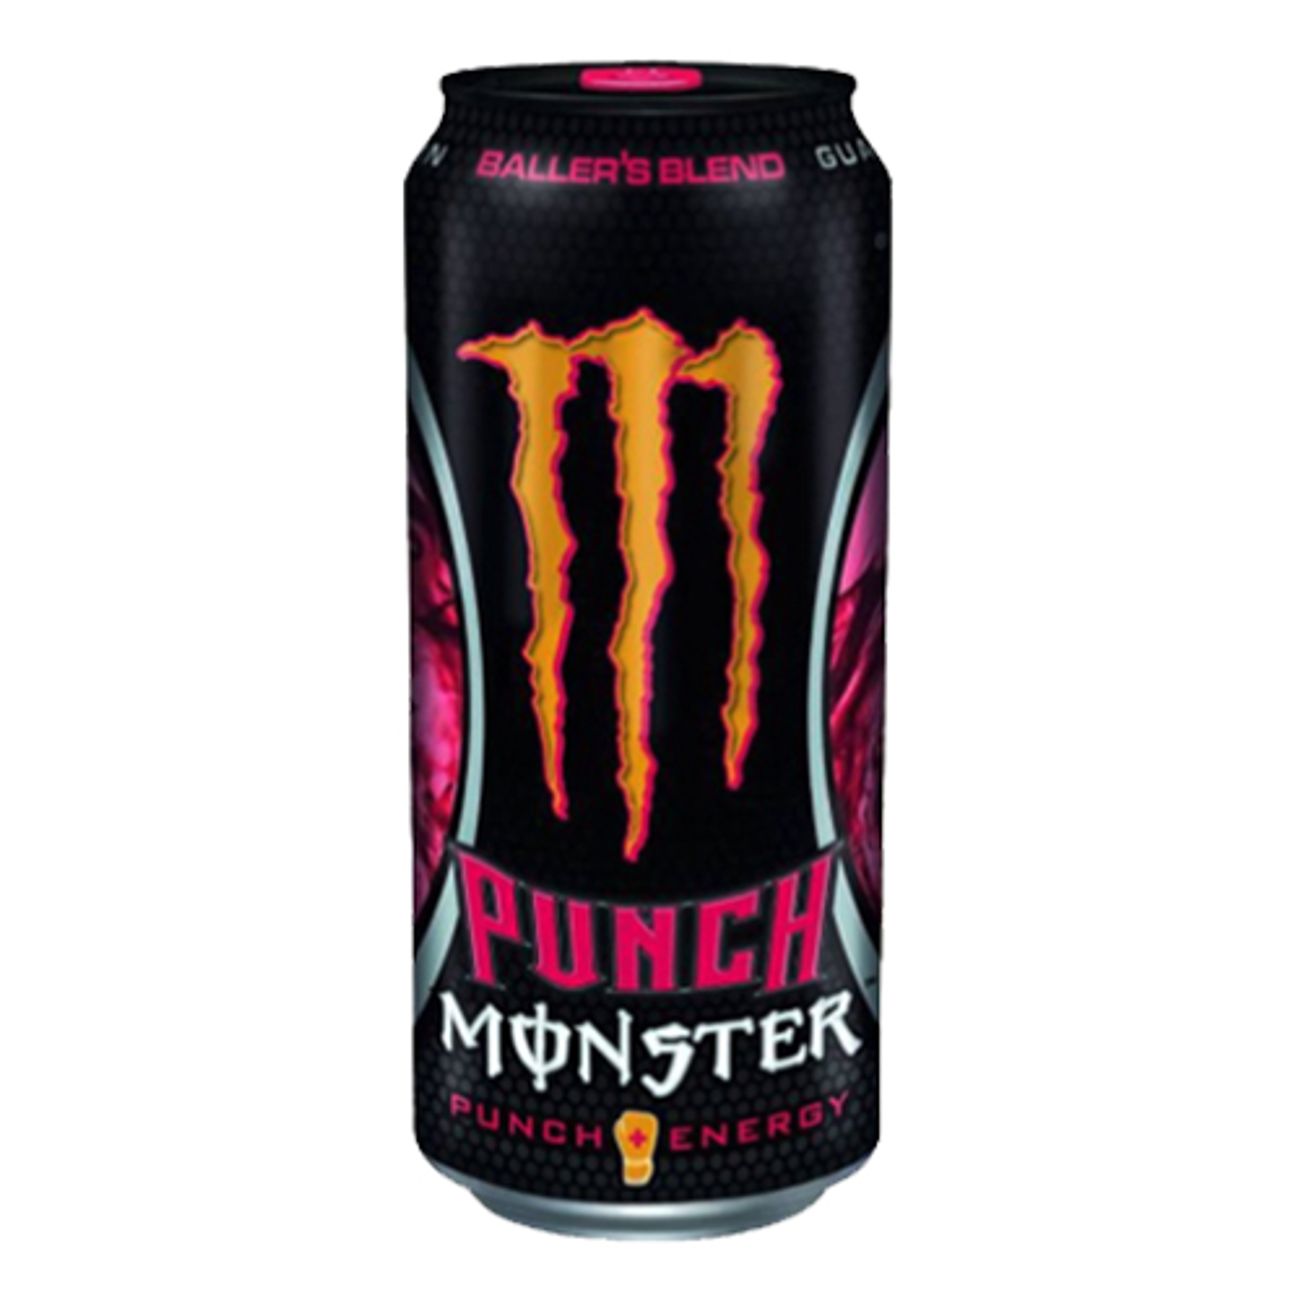 monster-energy-dub-ballers-blend-1